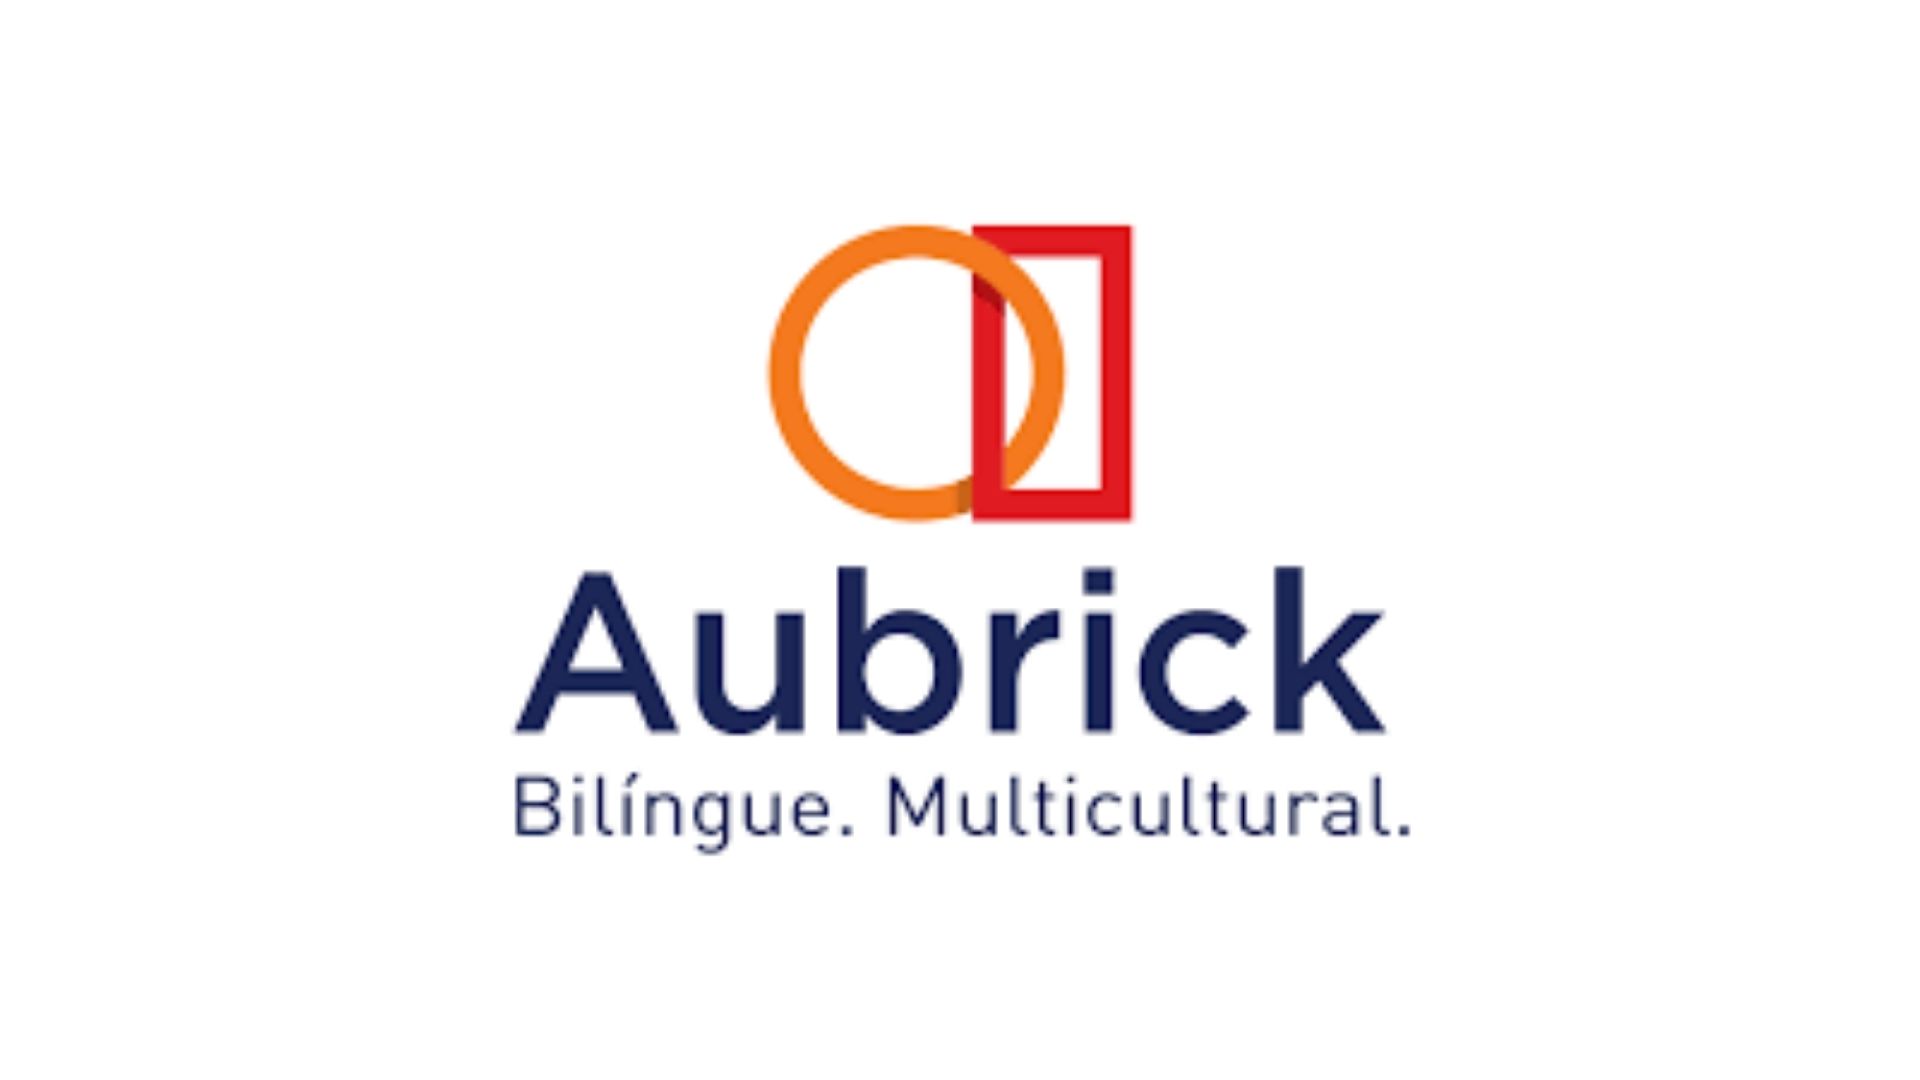 Aubrick